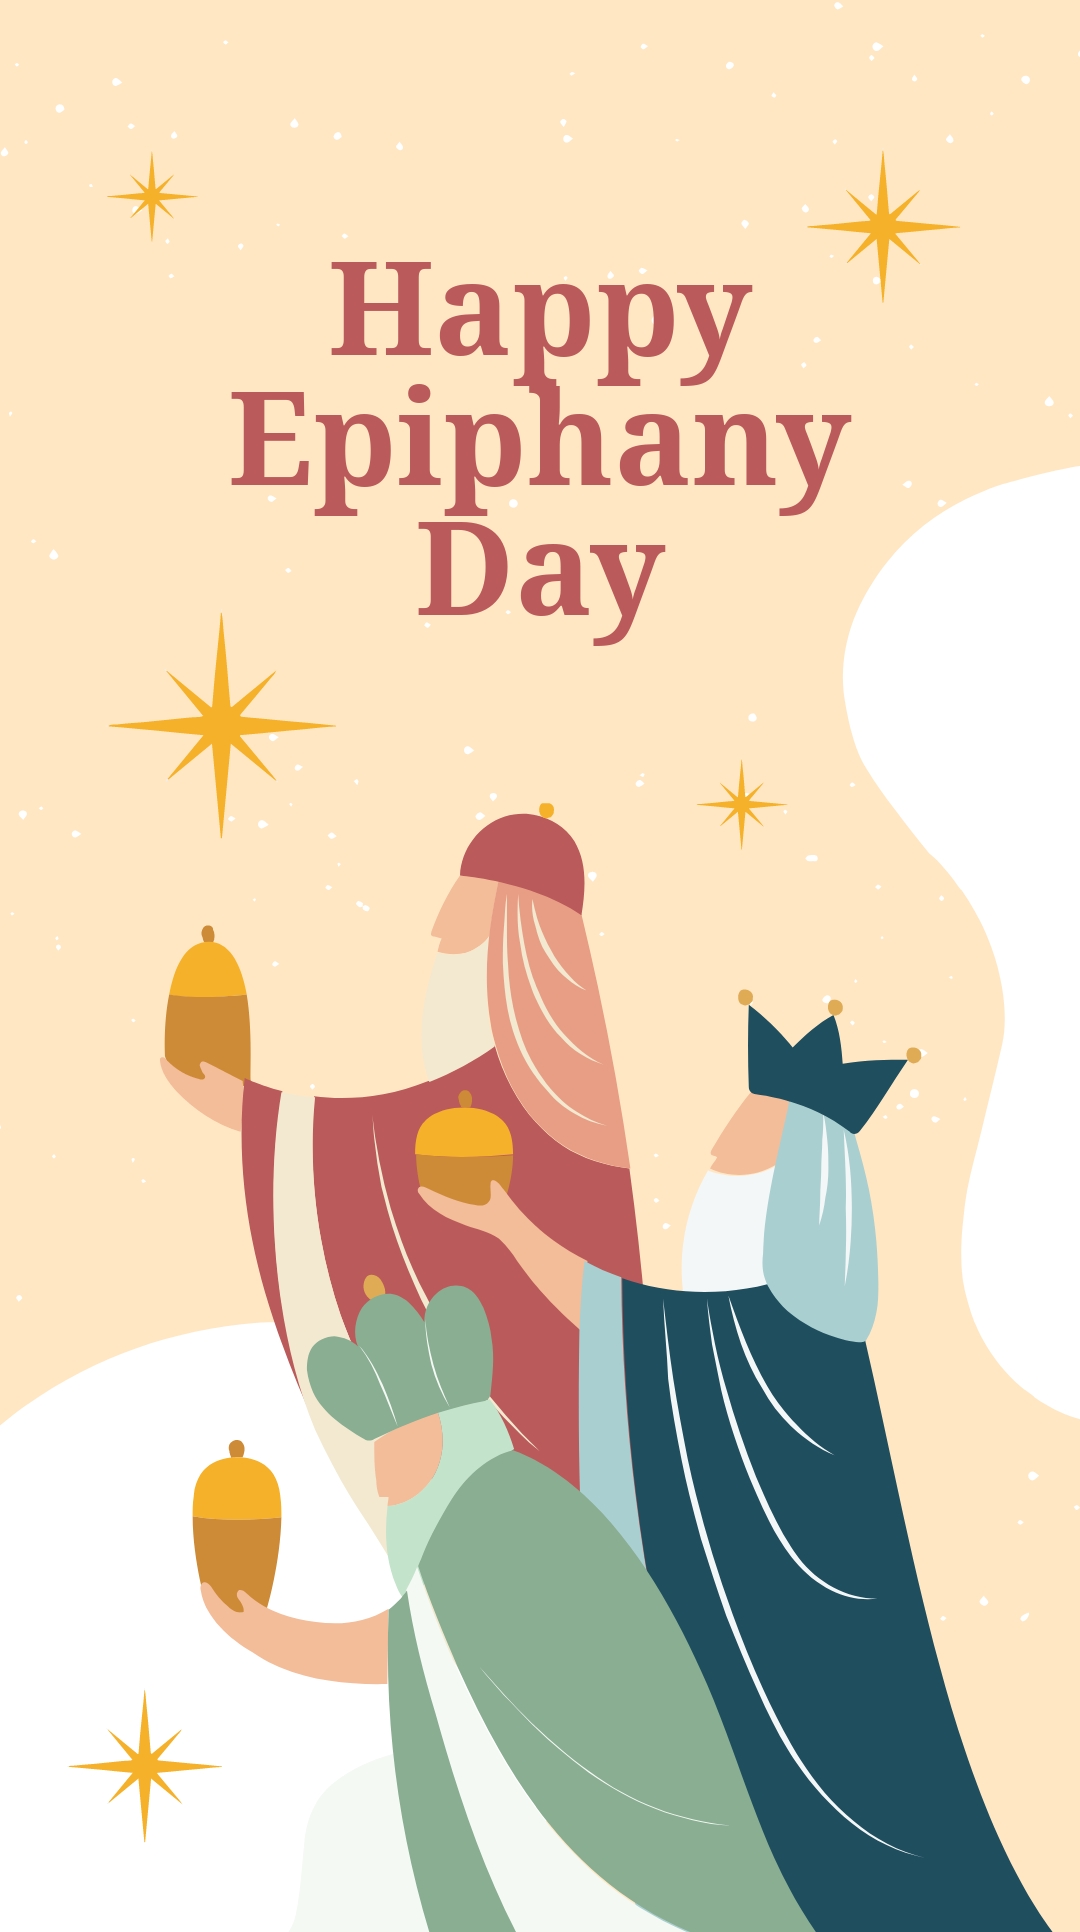 Happy Epiphany Day Instagram Story